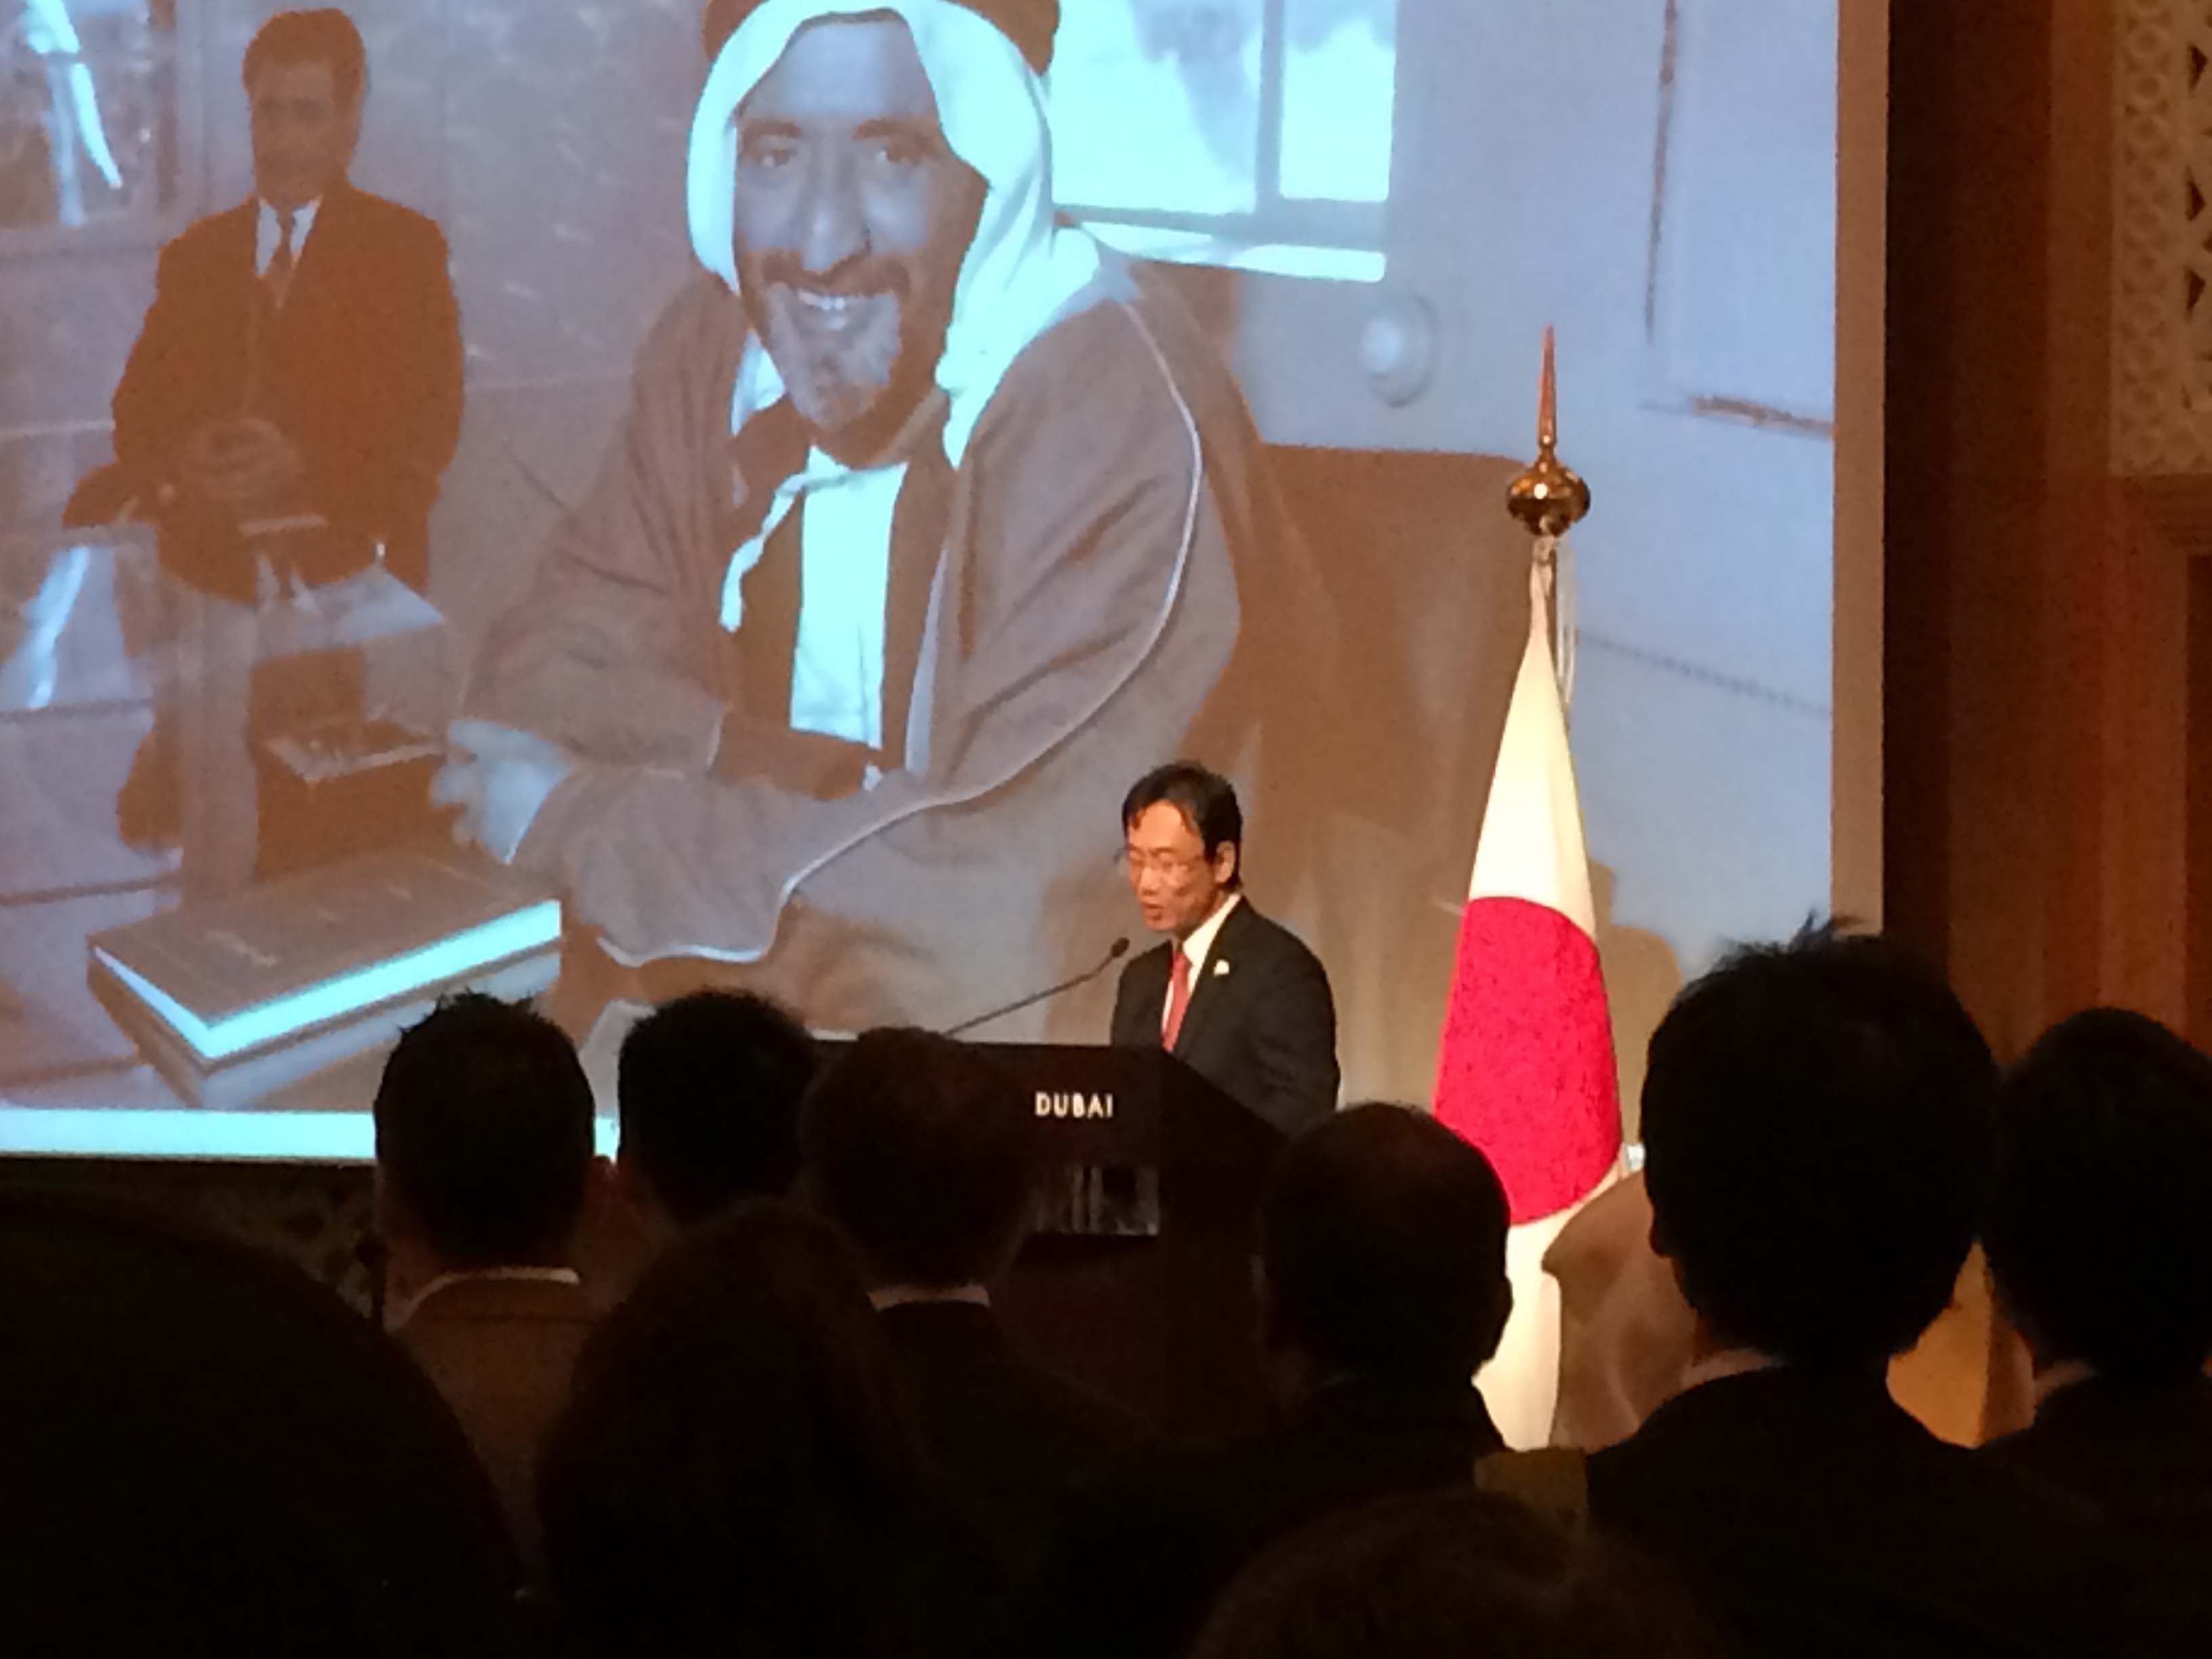 H.E. Hisashi Michigami, Consul-General of Japan in Dubai